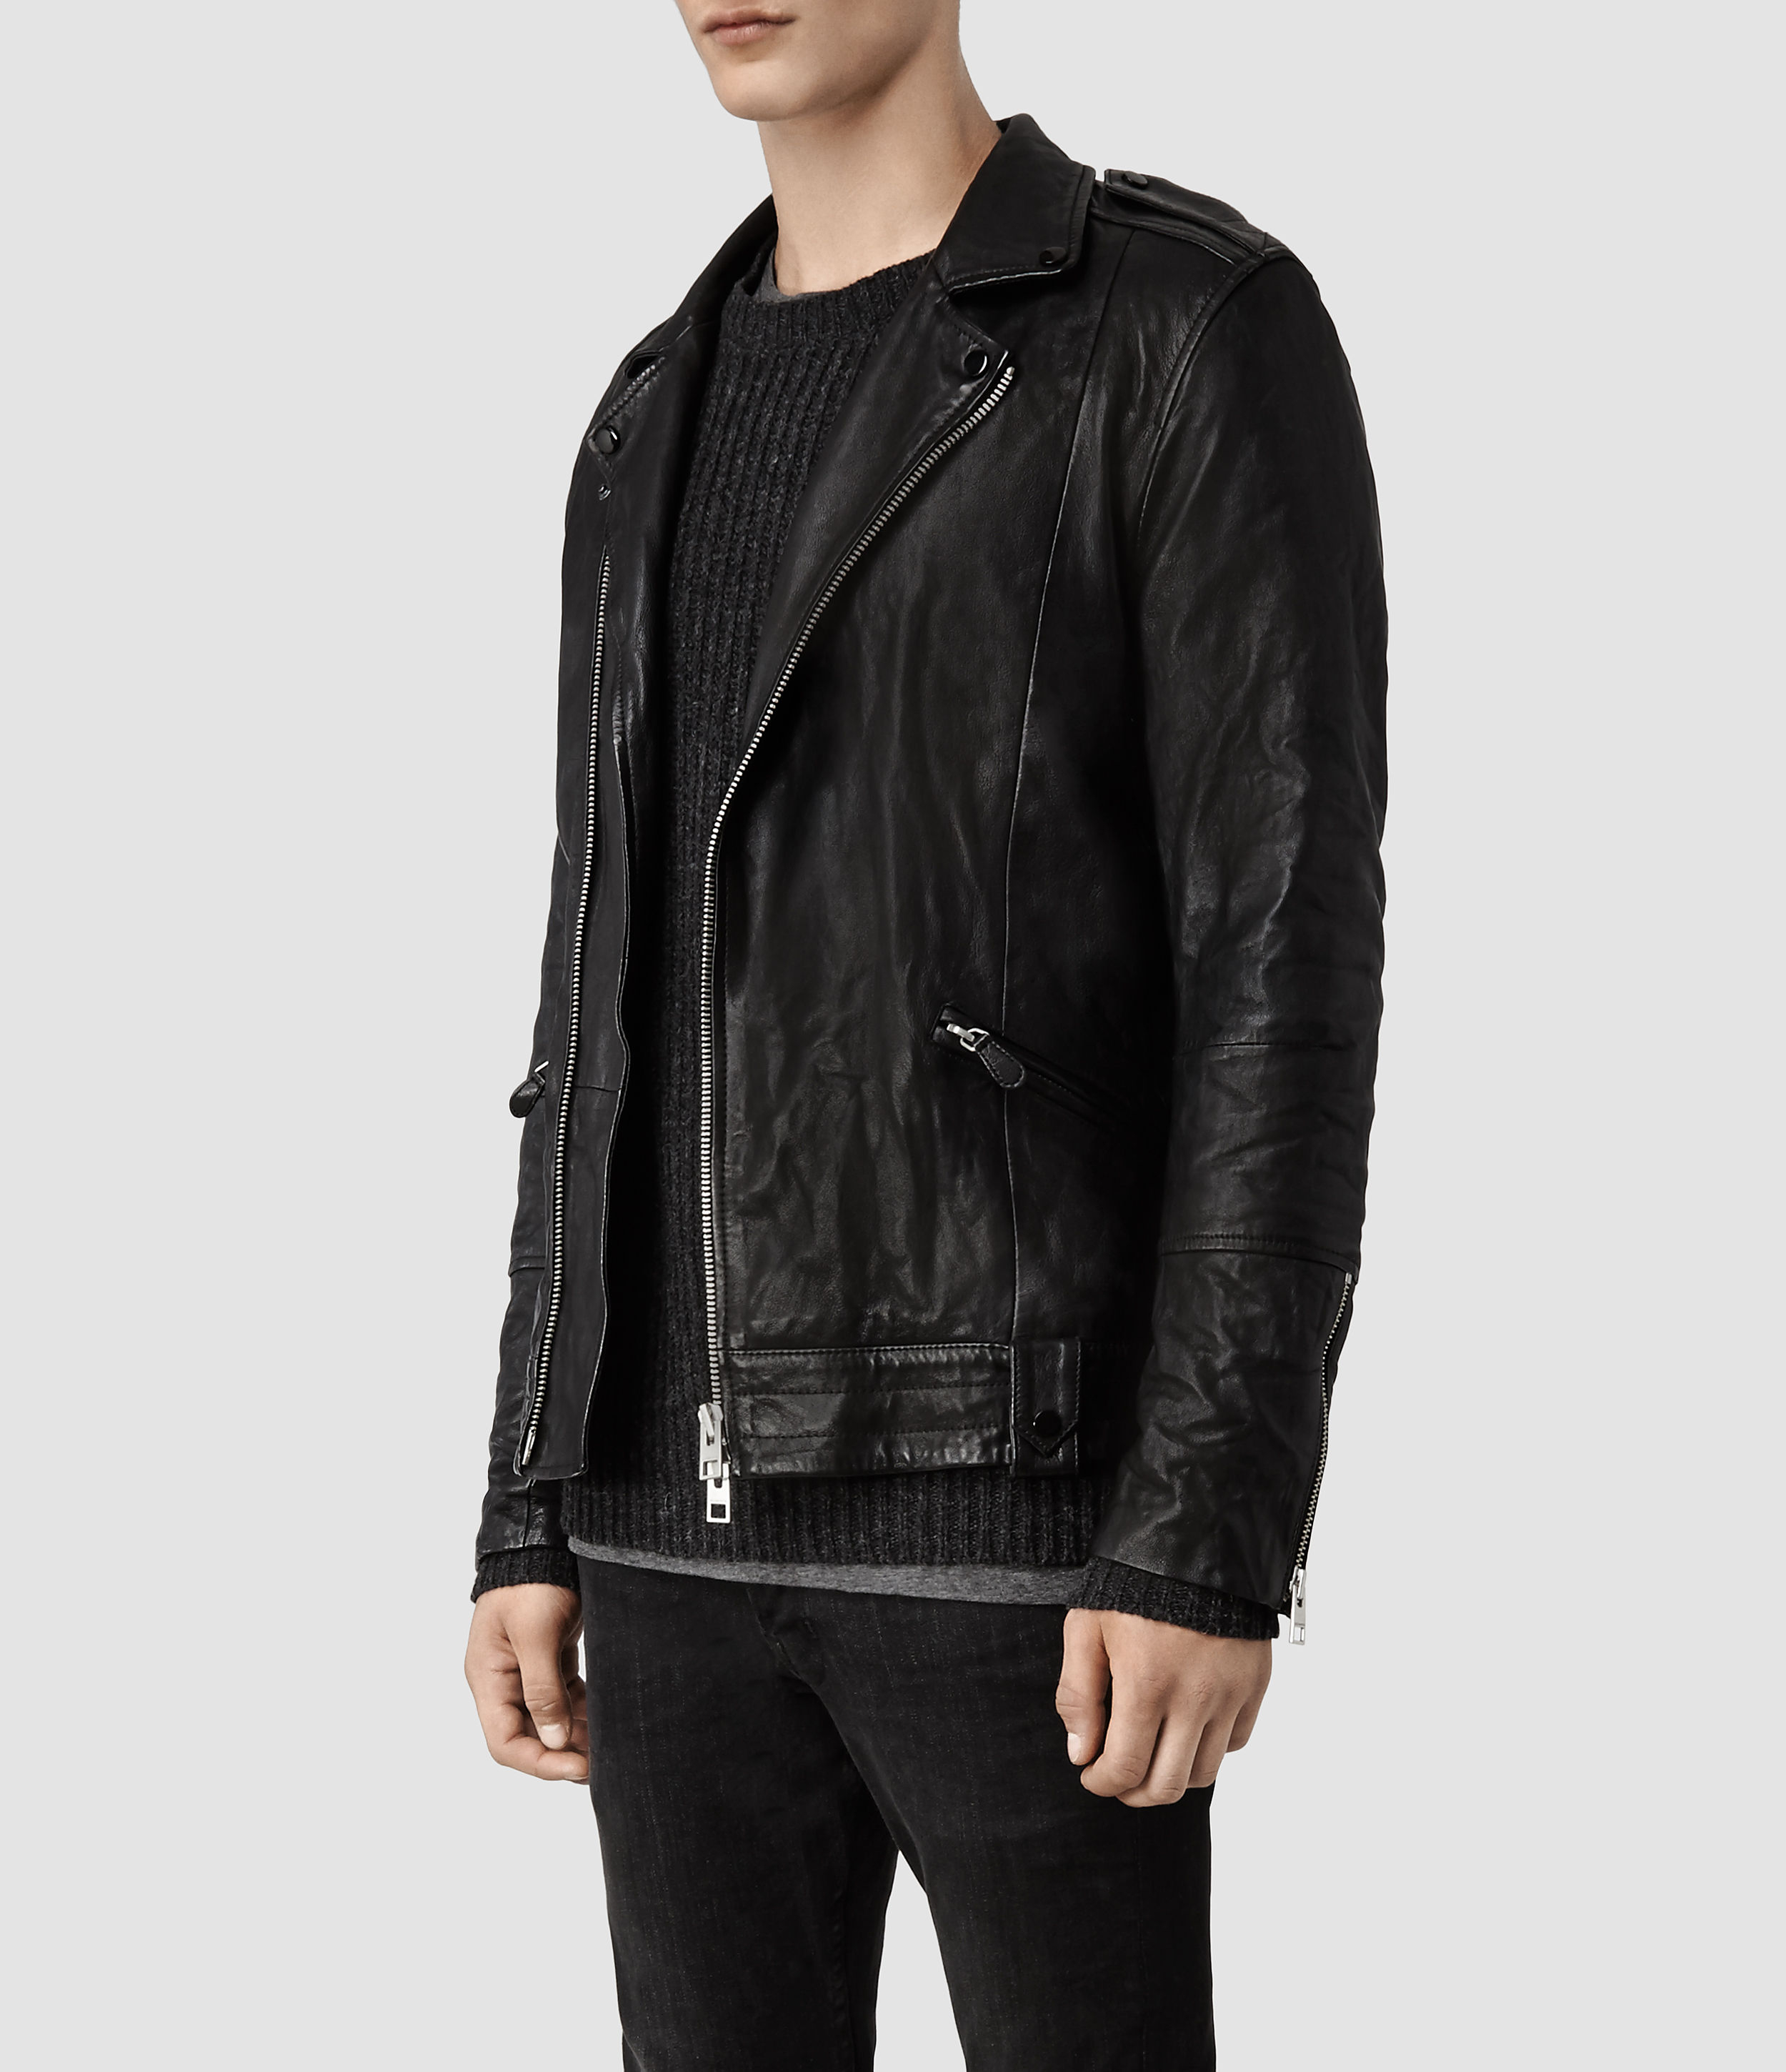 AllSaints Griffin Leather Biker Jacket in Black for Men - Lyst